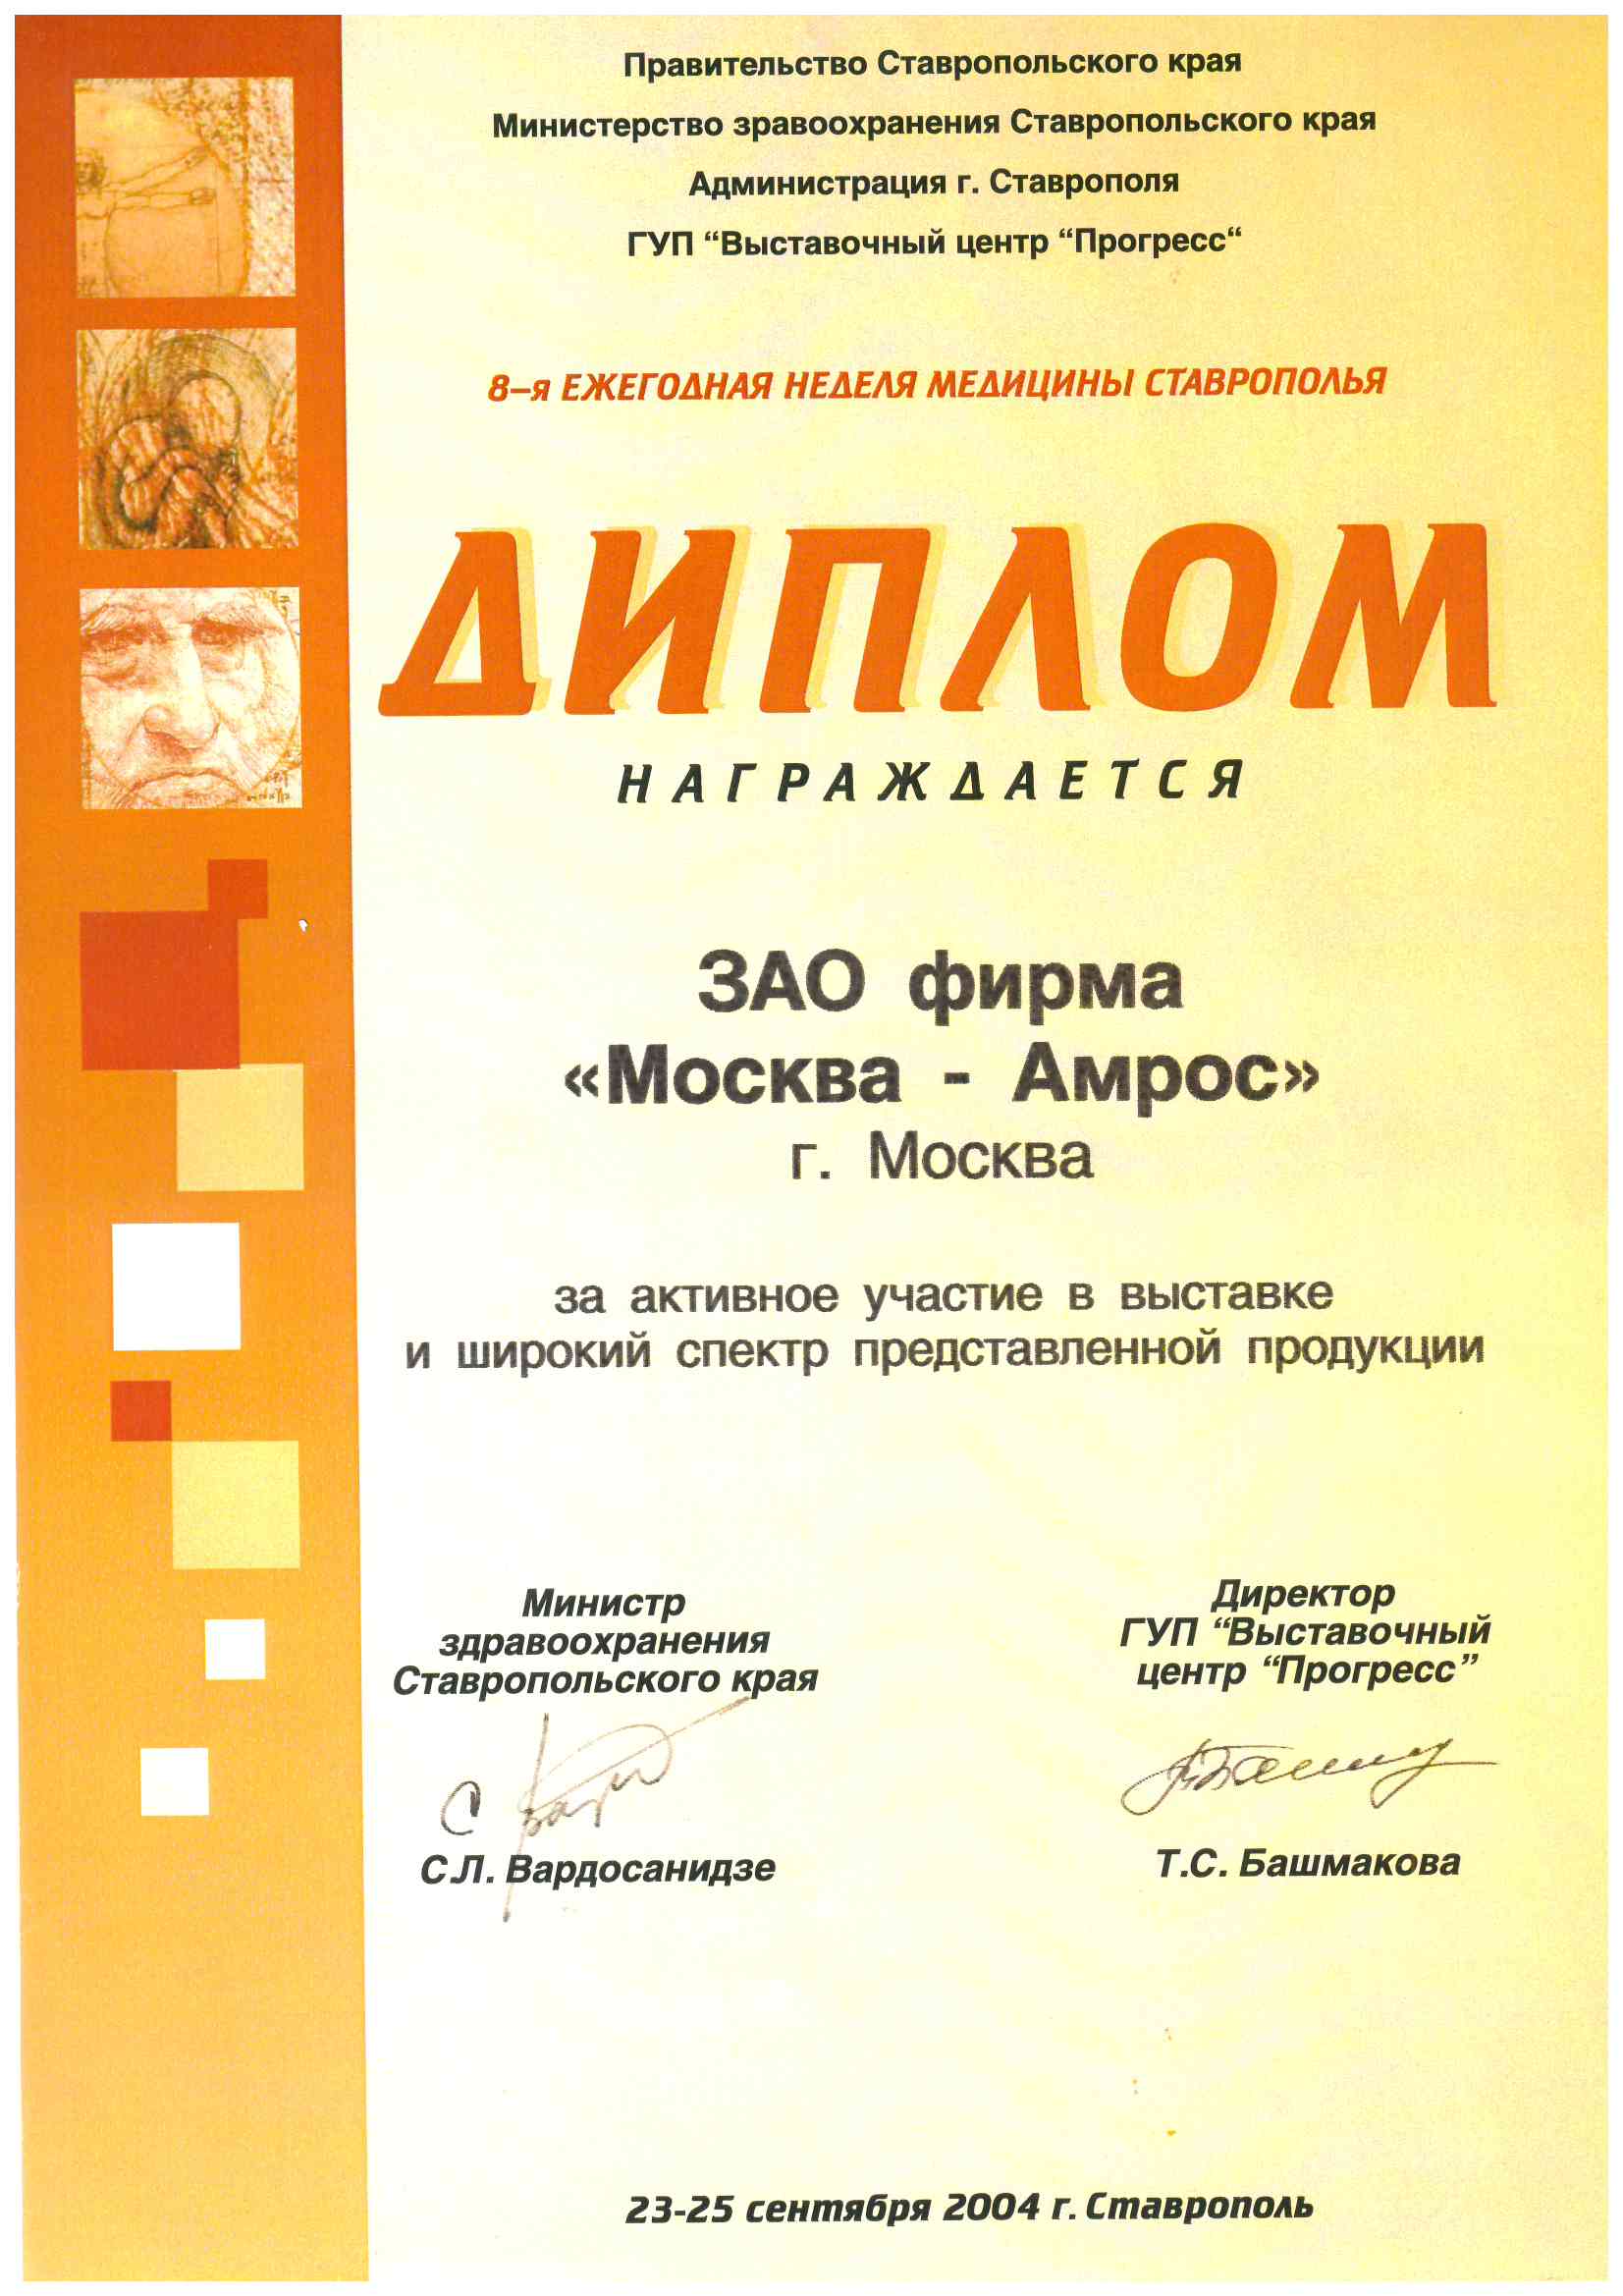 Диплом за активное участие в выставке «8-я ЕЖЕГОДНАЯ НЕДЕЛЯ МЕДИЦИНЫ СТАВРОПОЛЬЯ» и широкий спектр представленной продукции, 2004 г.